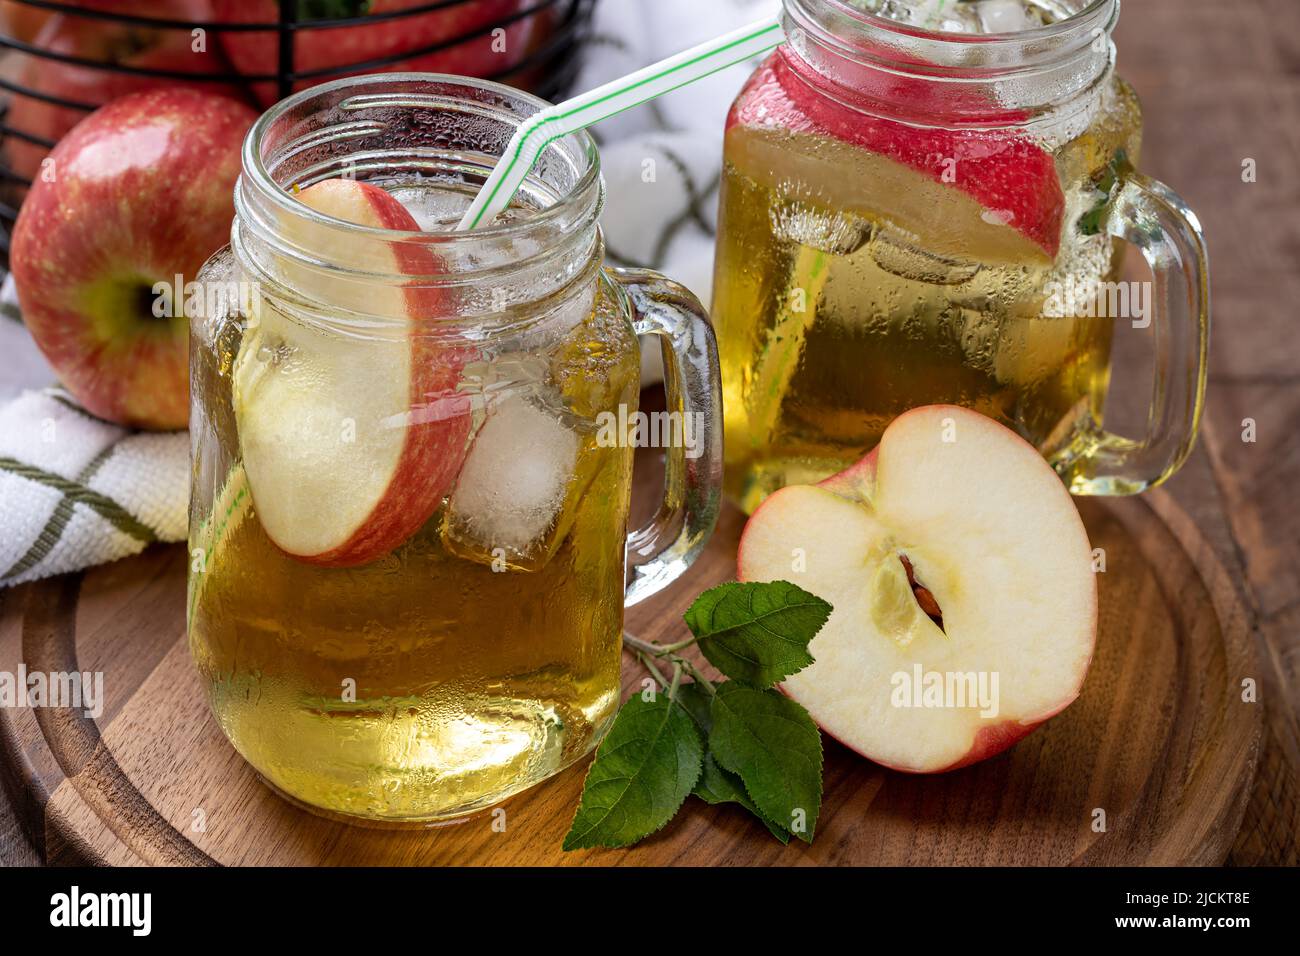 Dos vasos de zumo de manzana con rodajas de manzana y hielo en un plato de madera con una cesta de manzanas de fondo Foto de stock